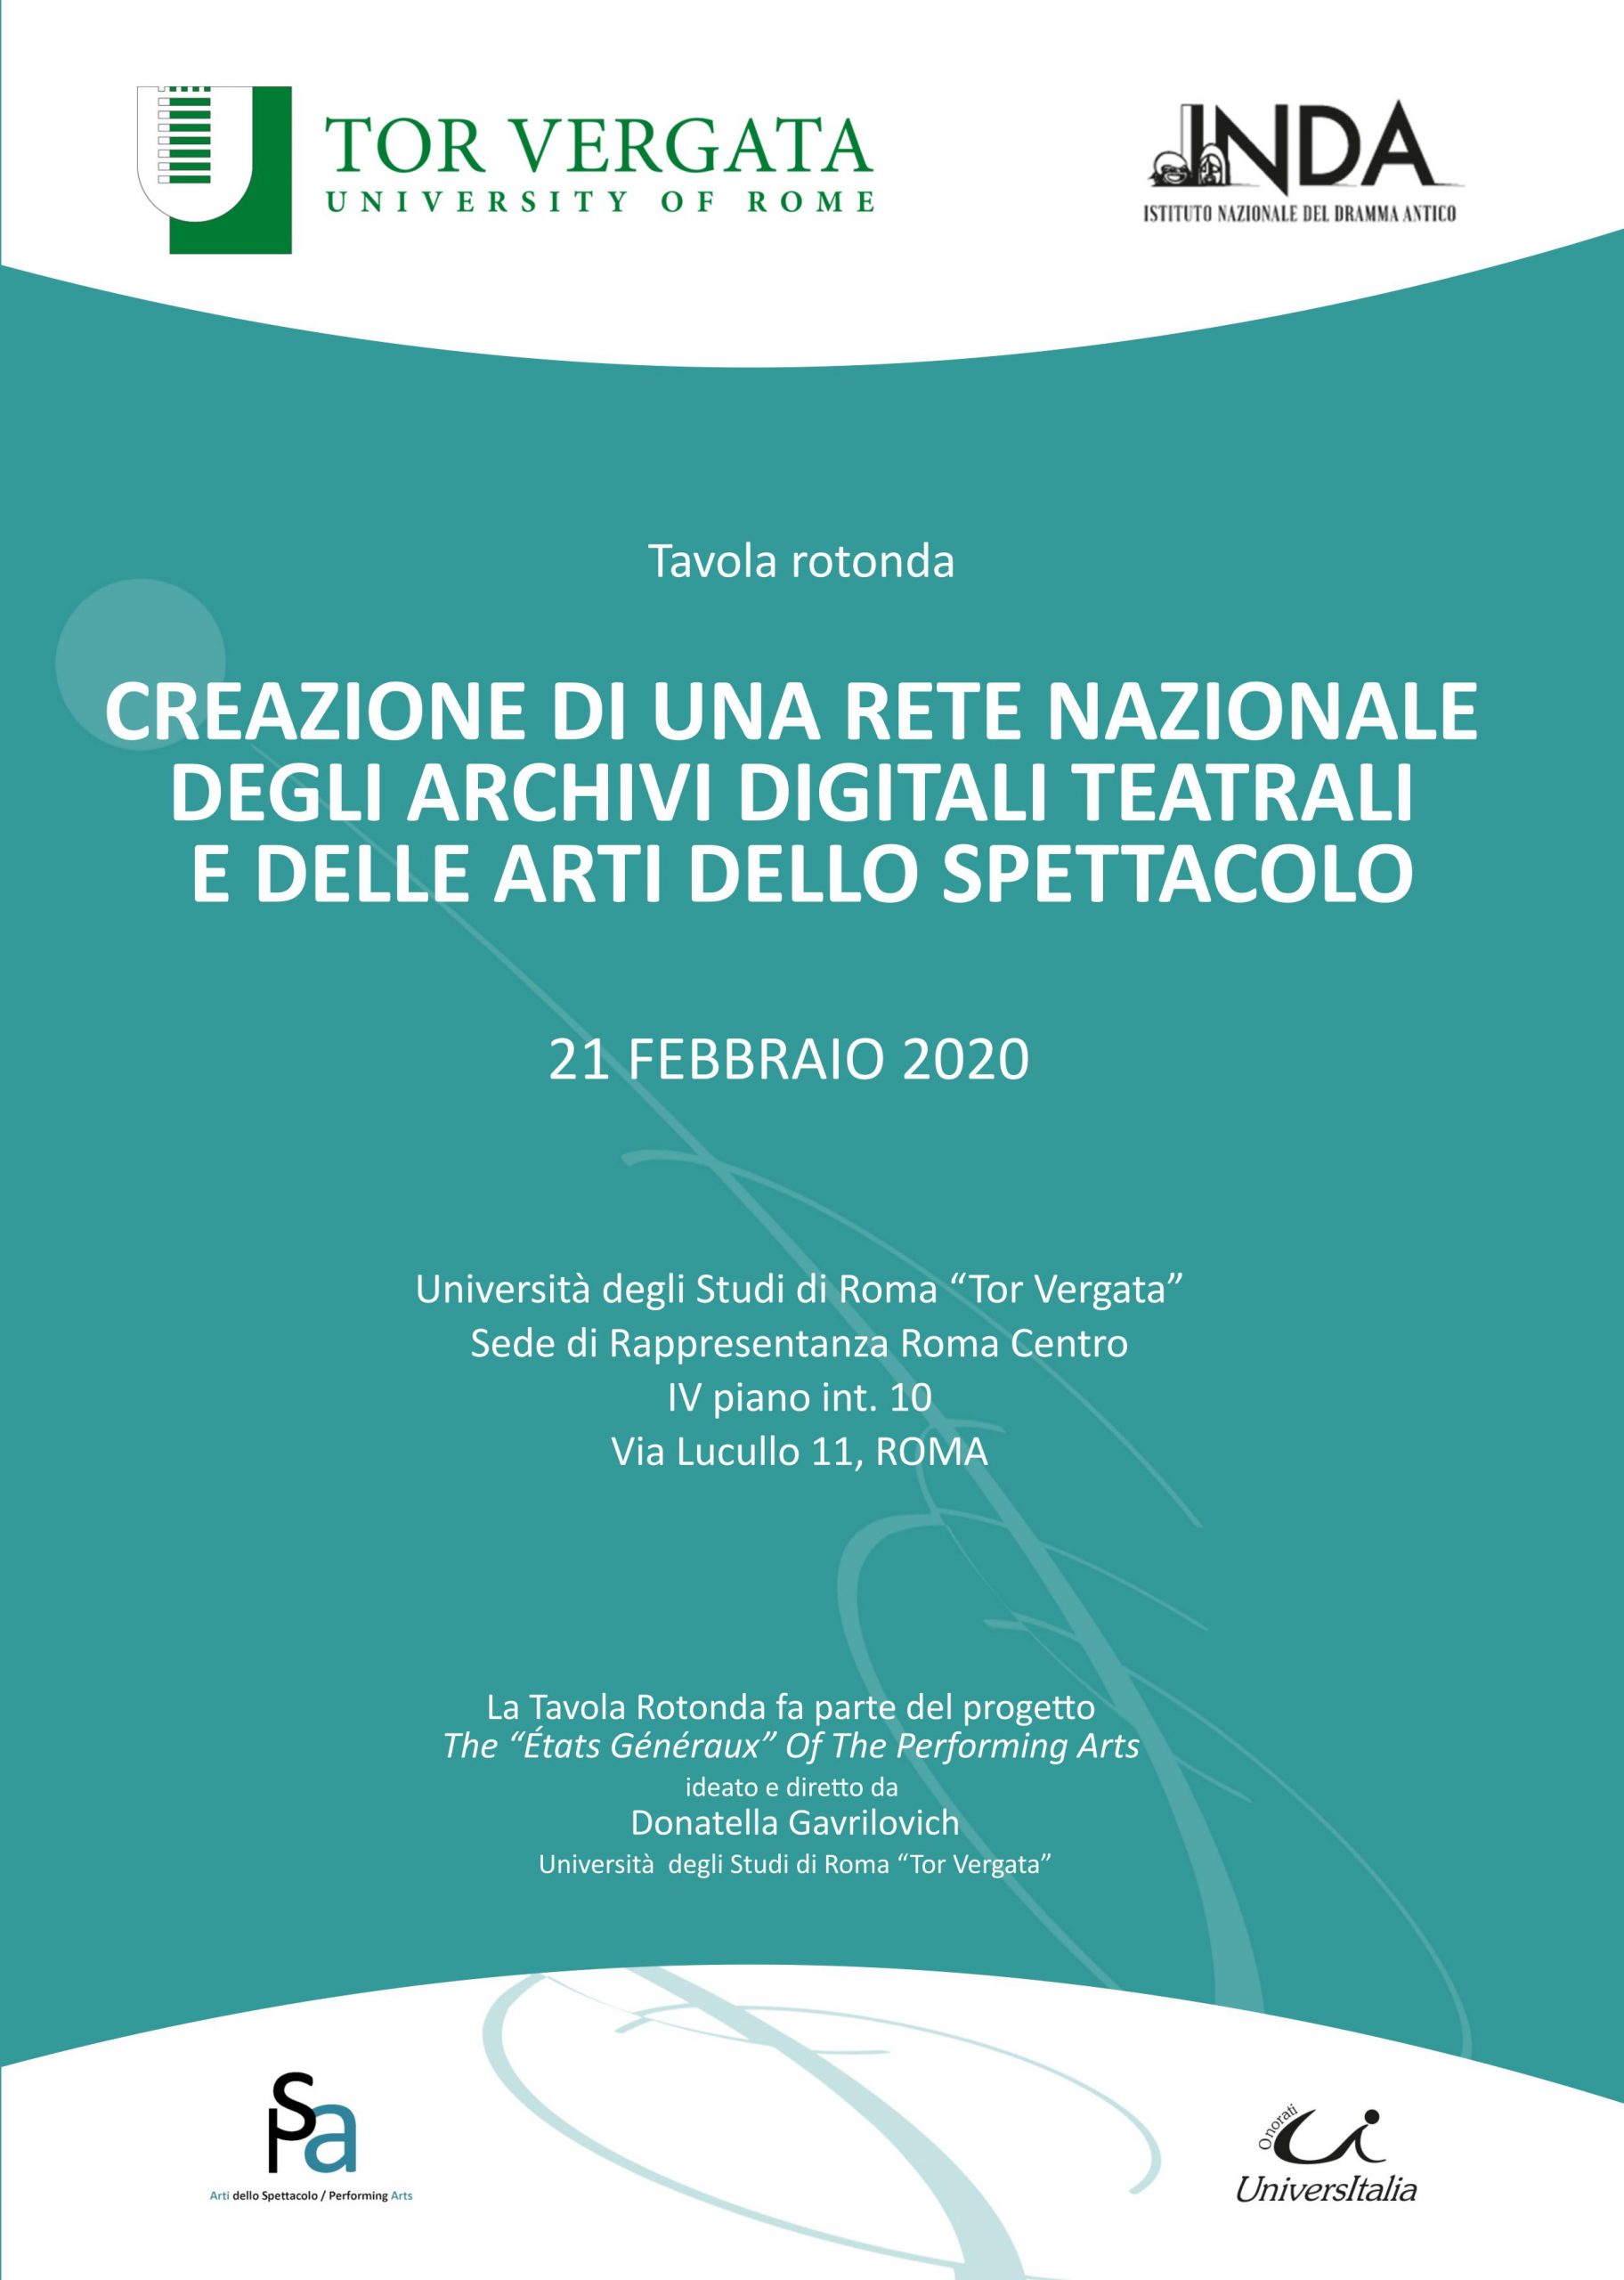 Una rete nazionale degli archivi digitali teatrali e delle arti dello spettacolo: tavola rotonda a Roma